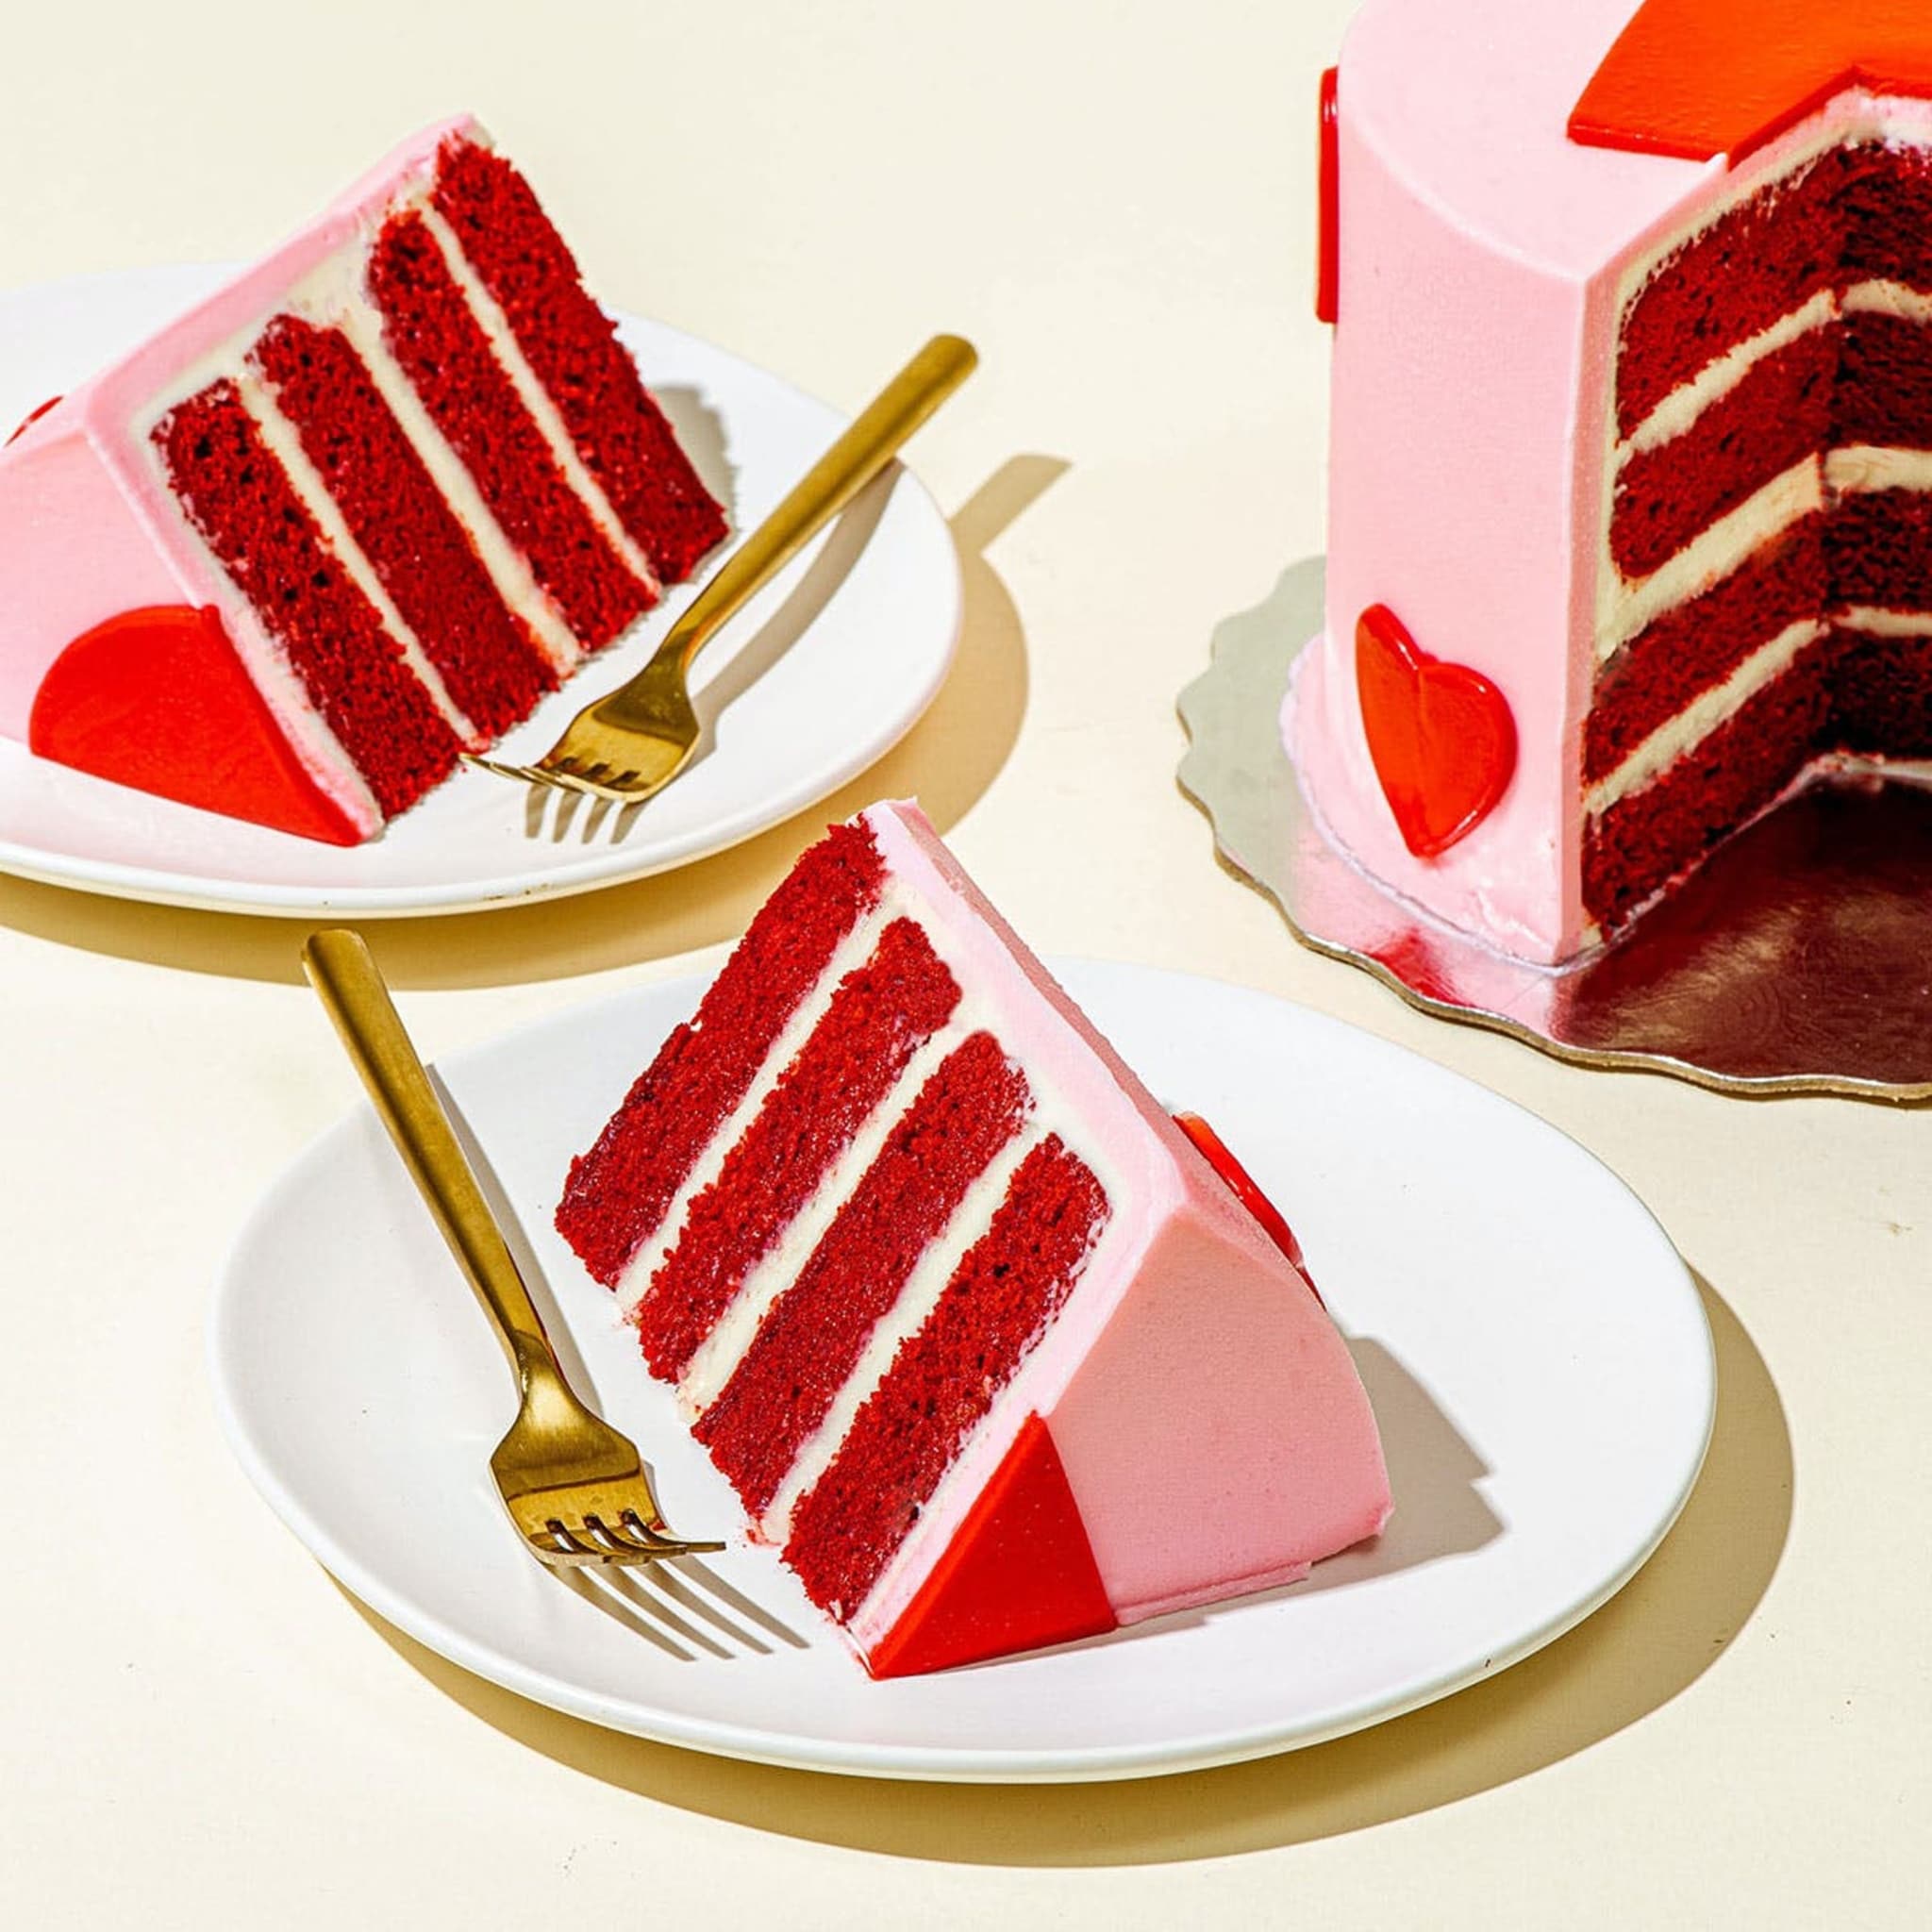 Rose Red Velvet heart cake from Duff Goldman - perfect family Valentine's Day gift idea